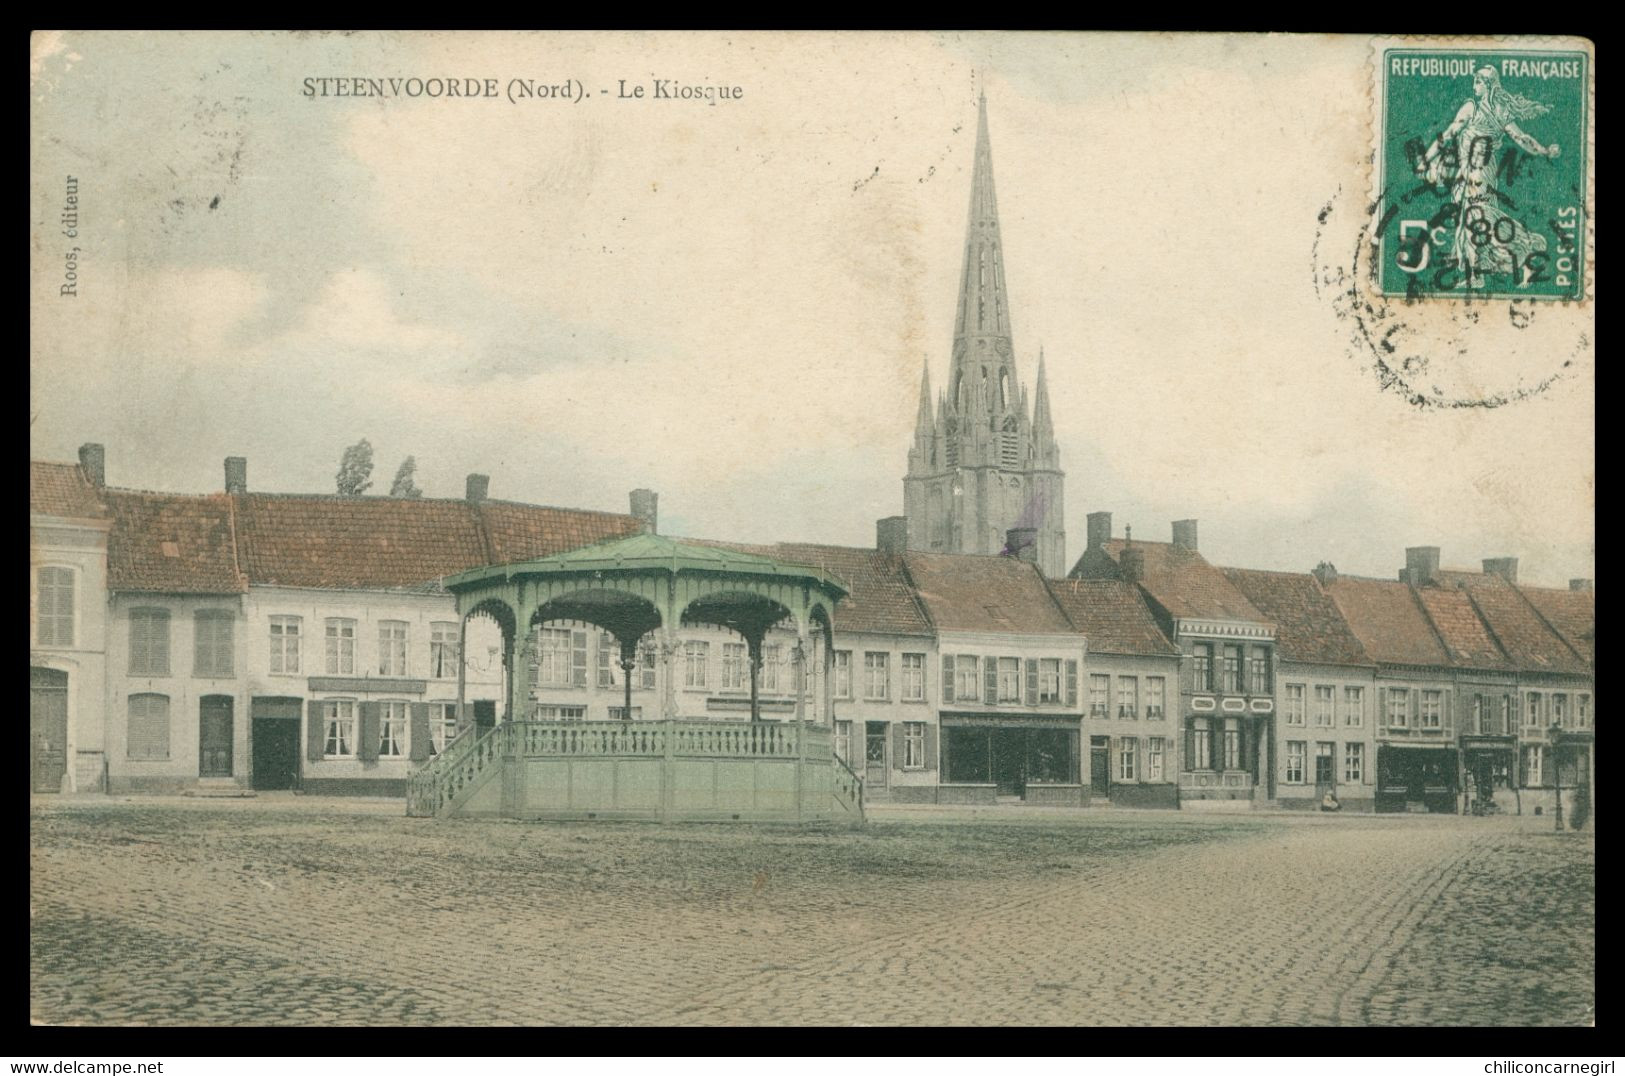 STEENVOORDE - STEENWOORDE - Le Kiosque - Edit. ROOS - 1908 - Colorisée - Steenvoorde